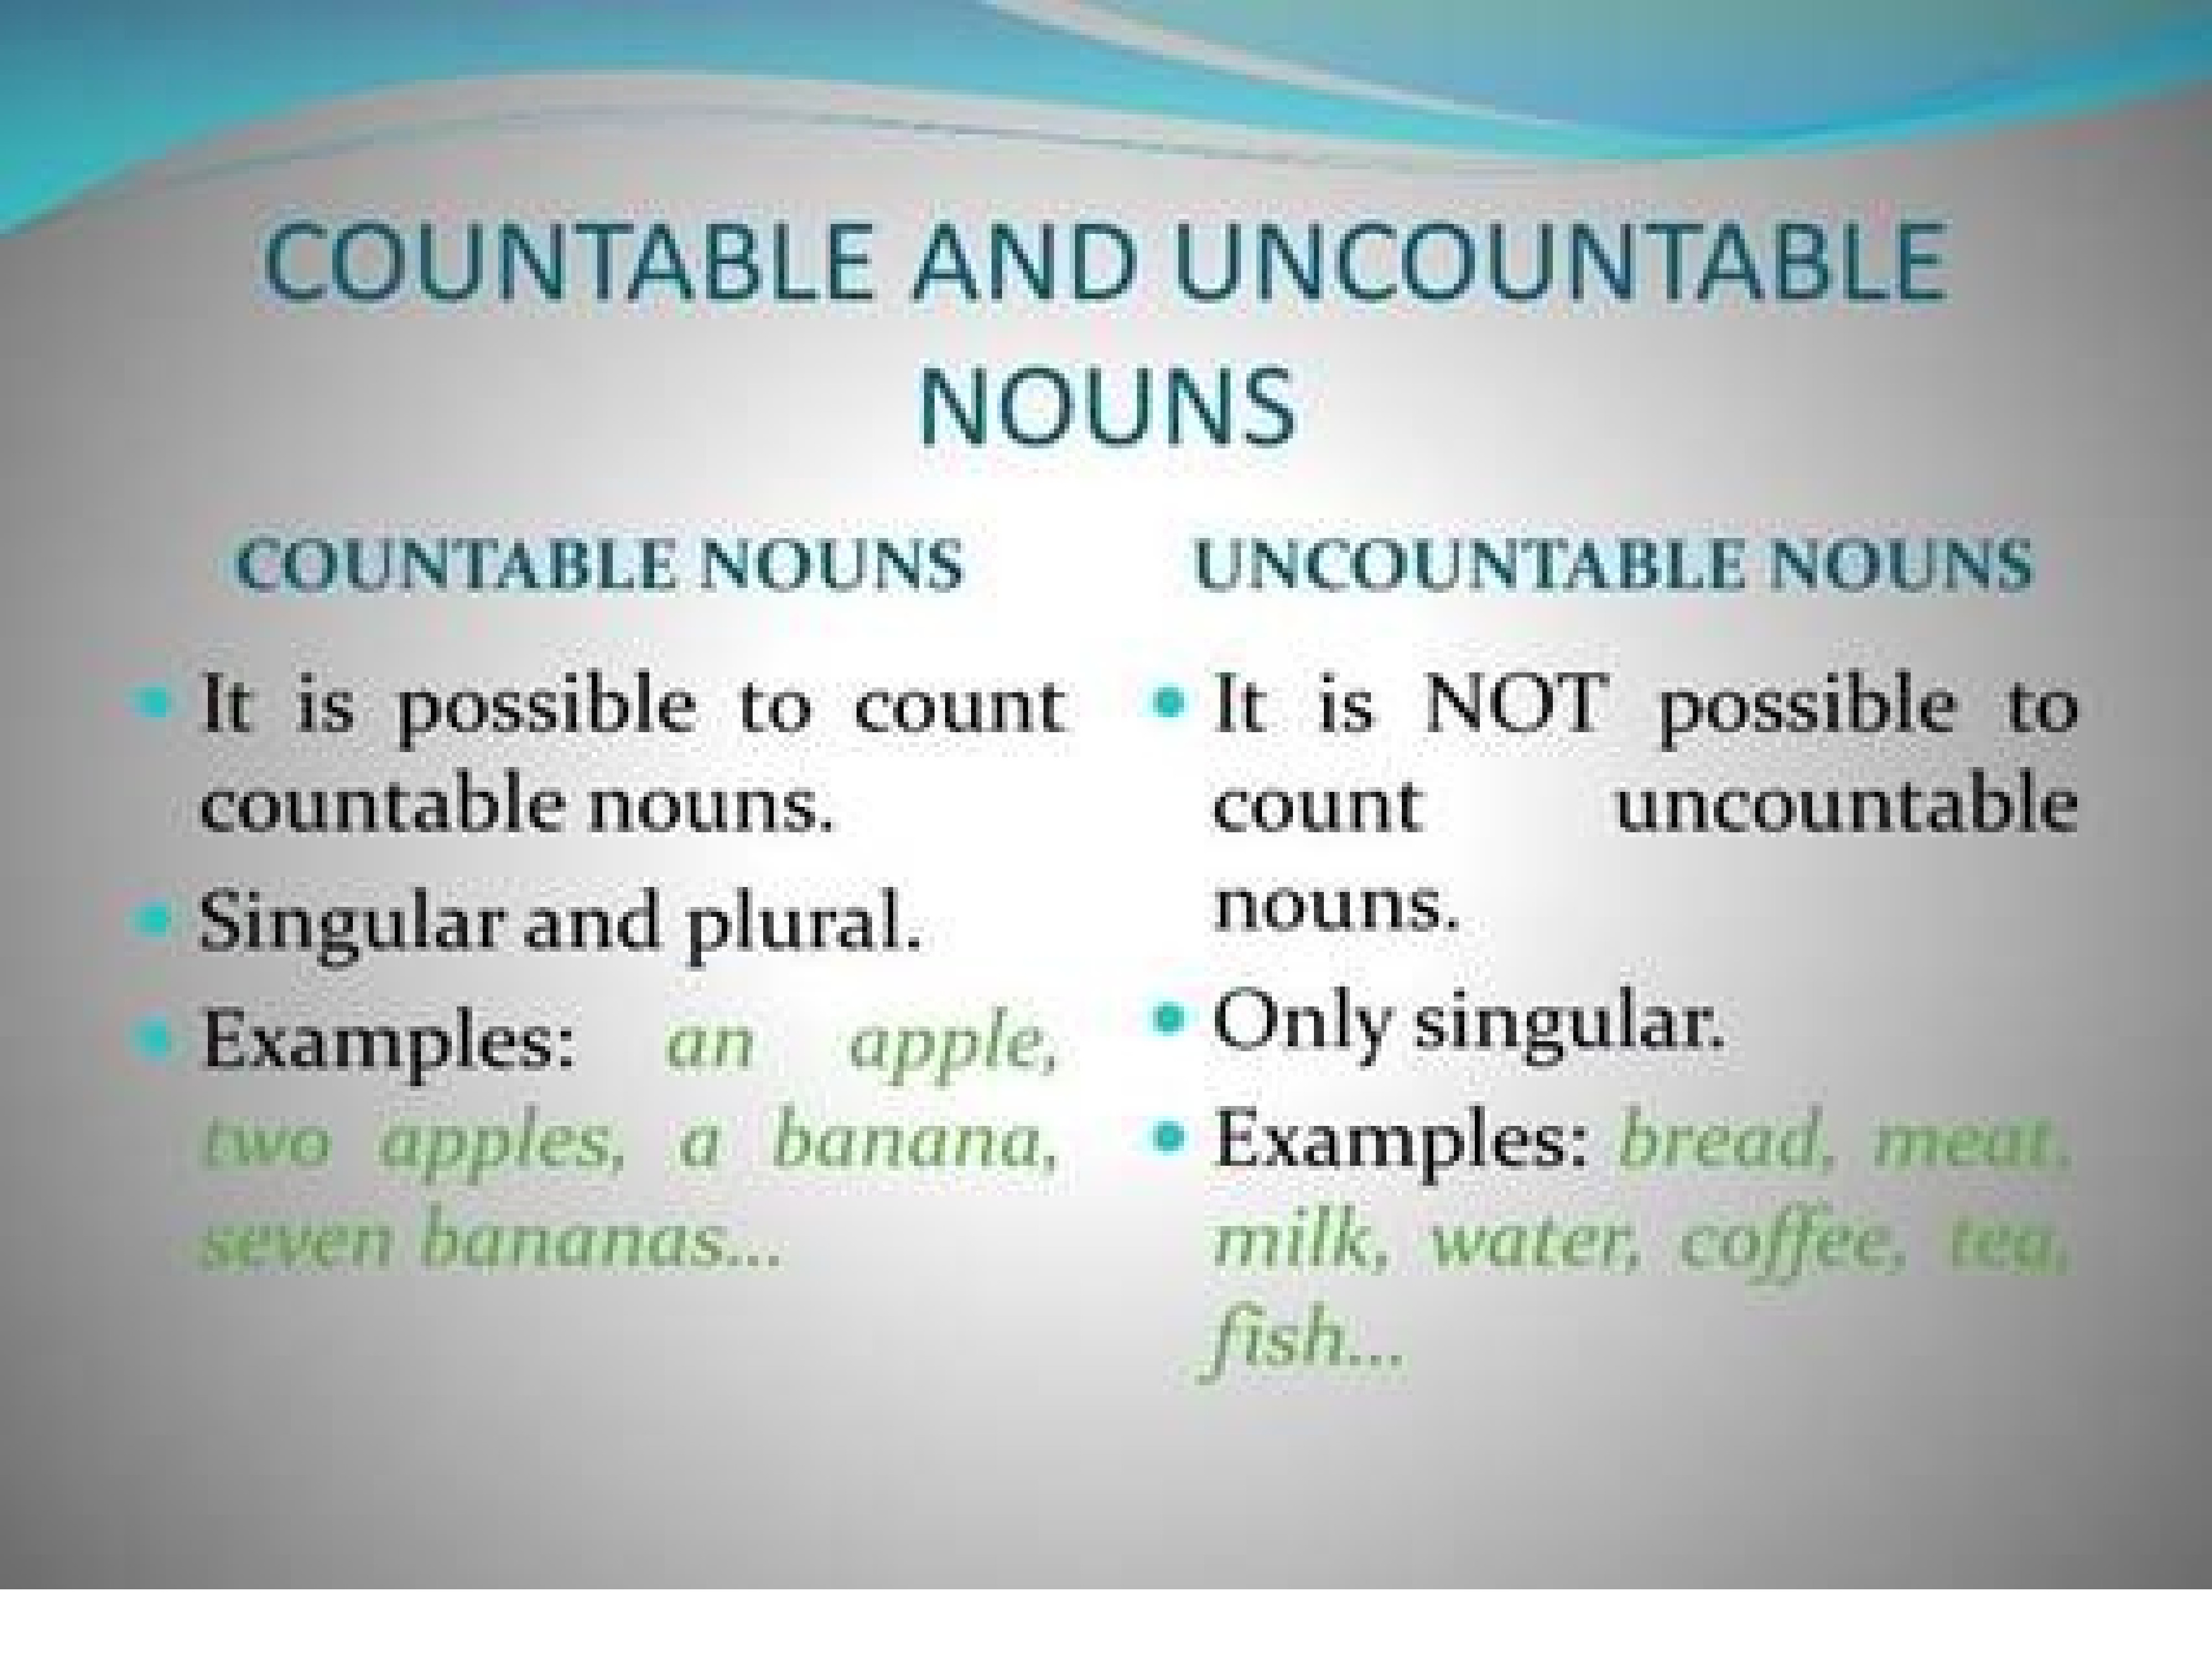 Uncountable перевод. Английский язык countable and uncountable Nouns. Countable Nouns uncountable Nouns правило. Countable and uncountable Nouns правило. Правила countable and uncountable.